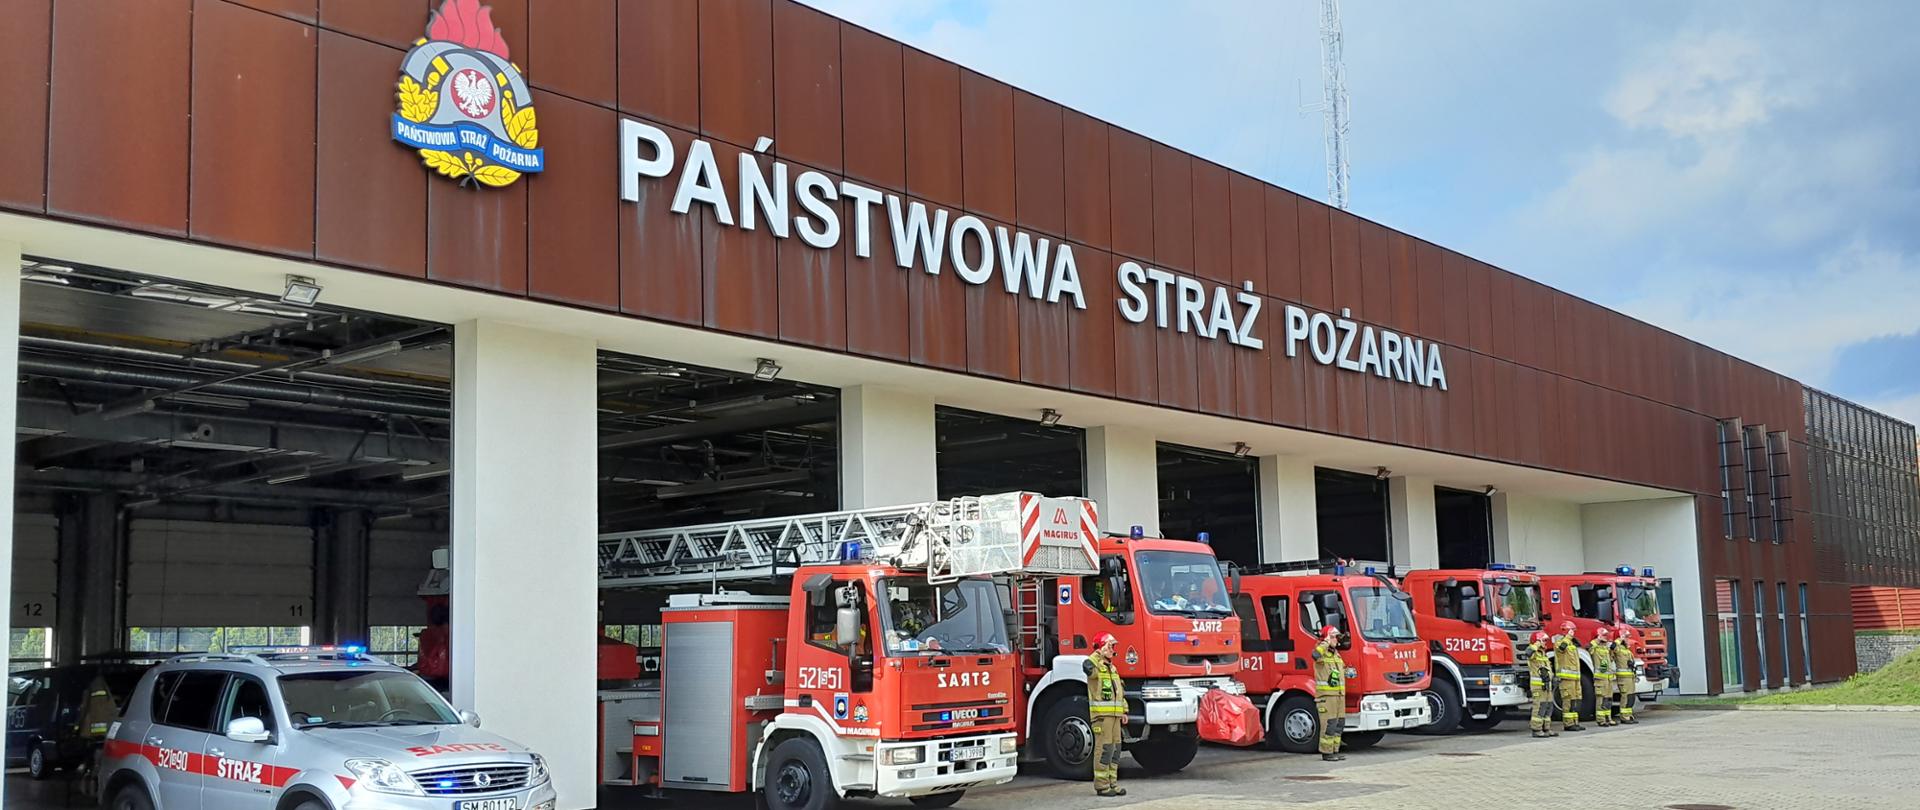 Samochody strażackie w bramie Komendy Miejskiej Państwowej Straży Pożarnej w Mysłowicach oraz strażacy stojący w nomexach przy samochodach bojowych.